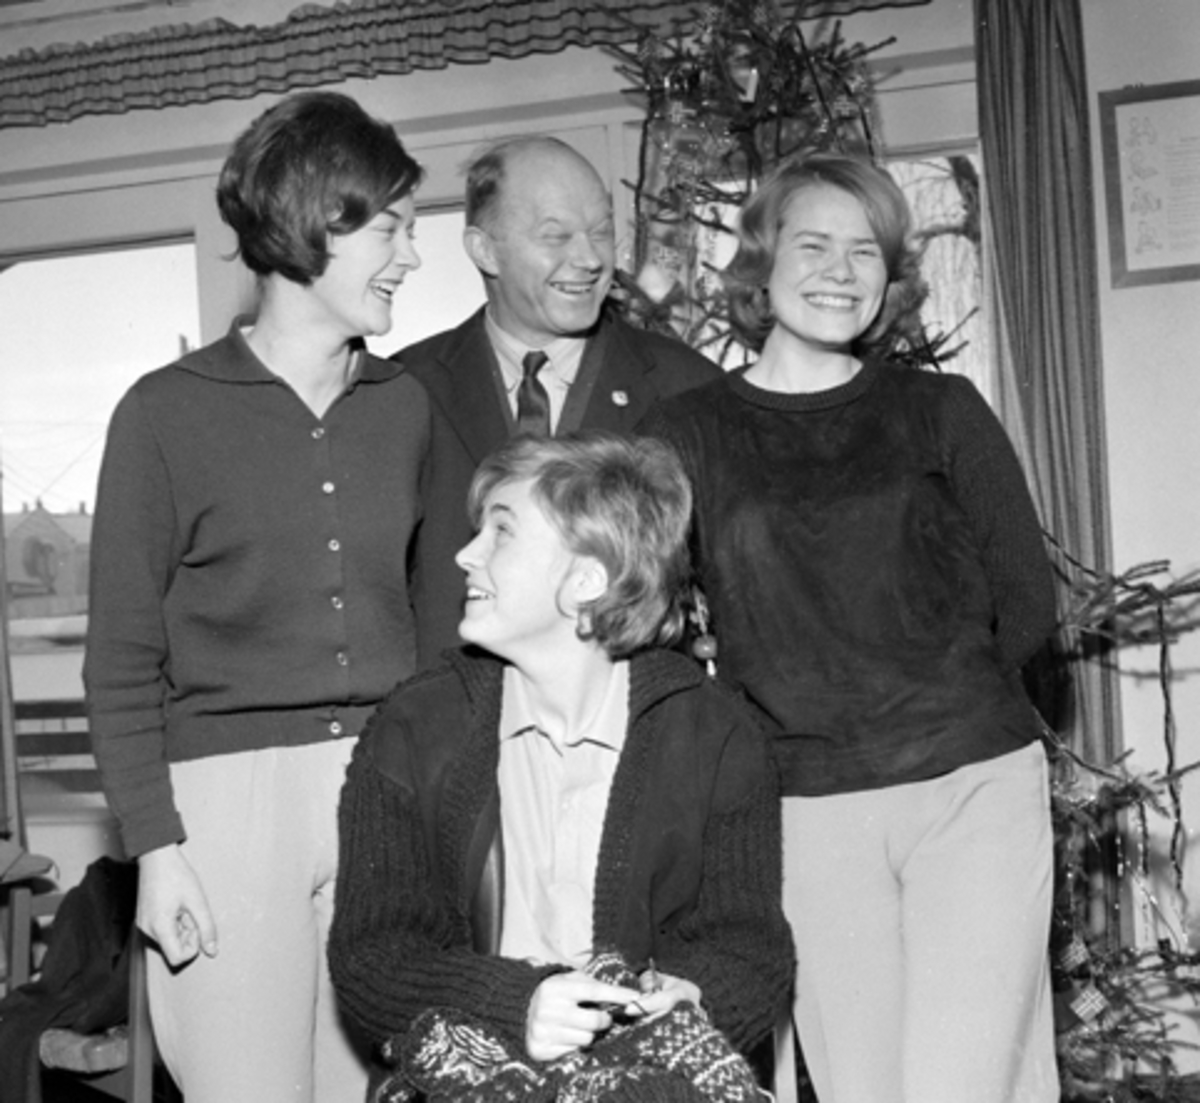 Fra venstre: Randi Elisabet Nilsen, Bjørn Norderhaug, Aud Groven. Foran Mette Rosenvinge. 